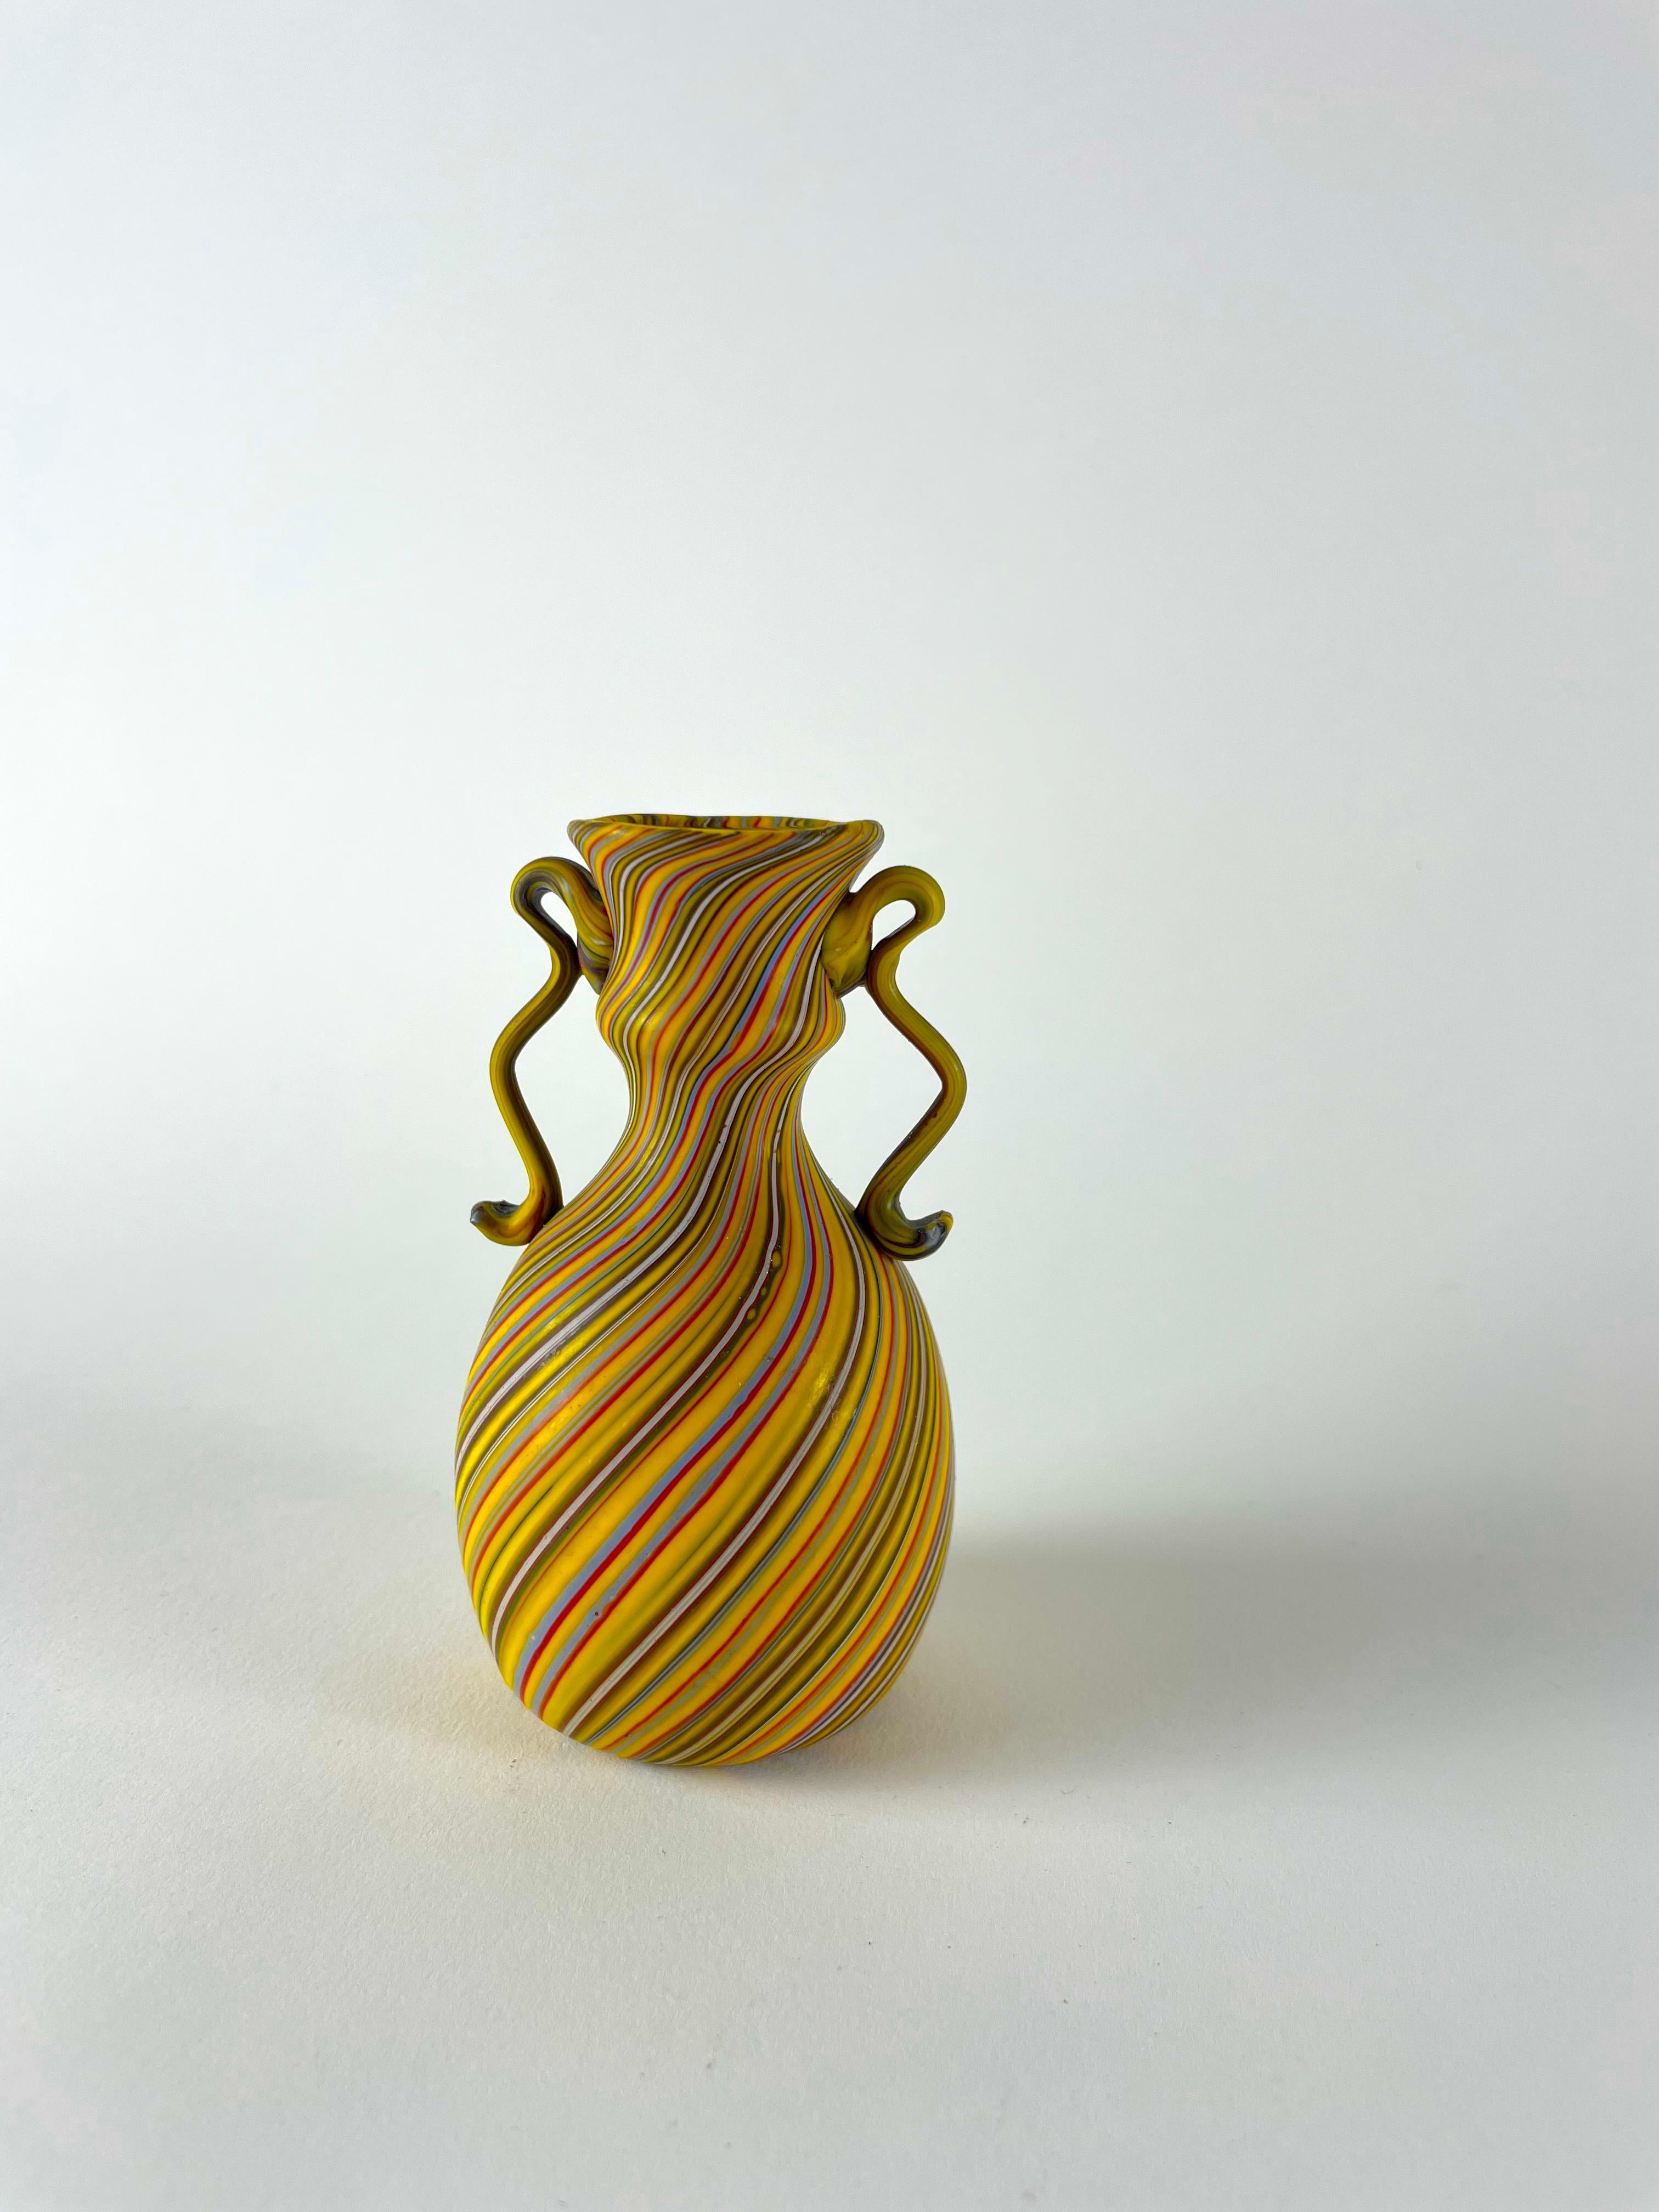 Wir stellen Ihnen den Vaso a cane vor, einen kleinen Schatz, der die unglaubliche Handwerkskunst von Murano verkörpert. Diese exquisite Vase wird in sorgfältiger Handarbeit mit einer einzigartigen Technik hergestellt, bei der kleine Glasstäbe in